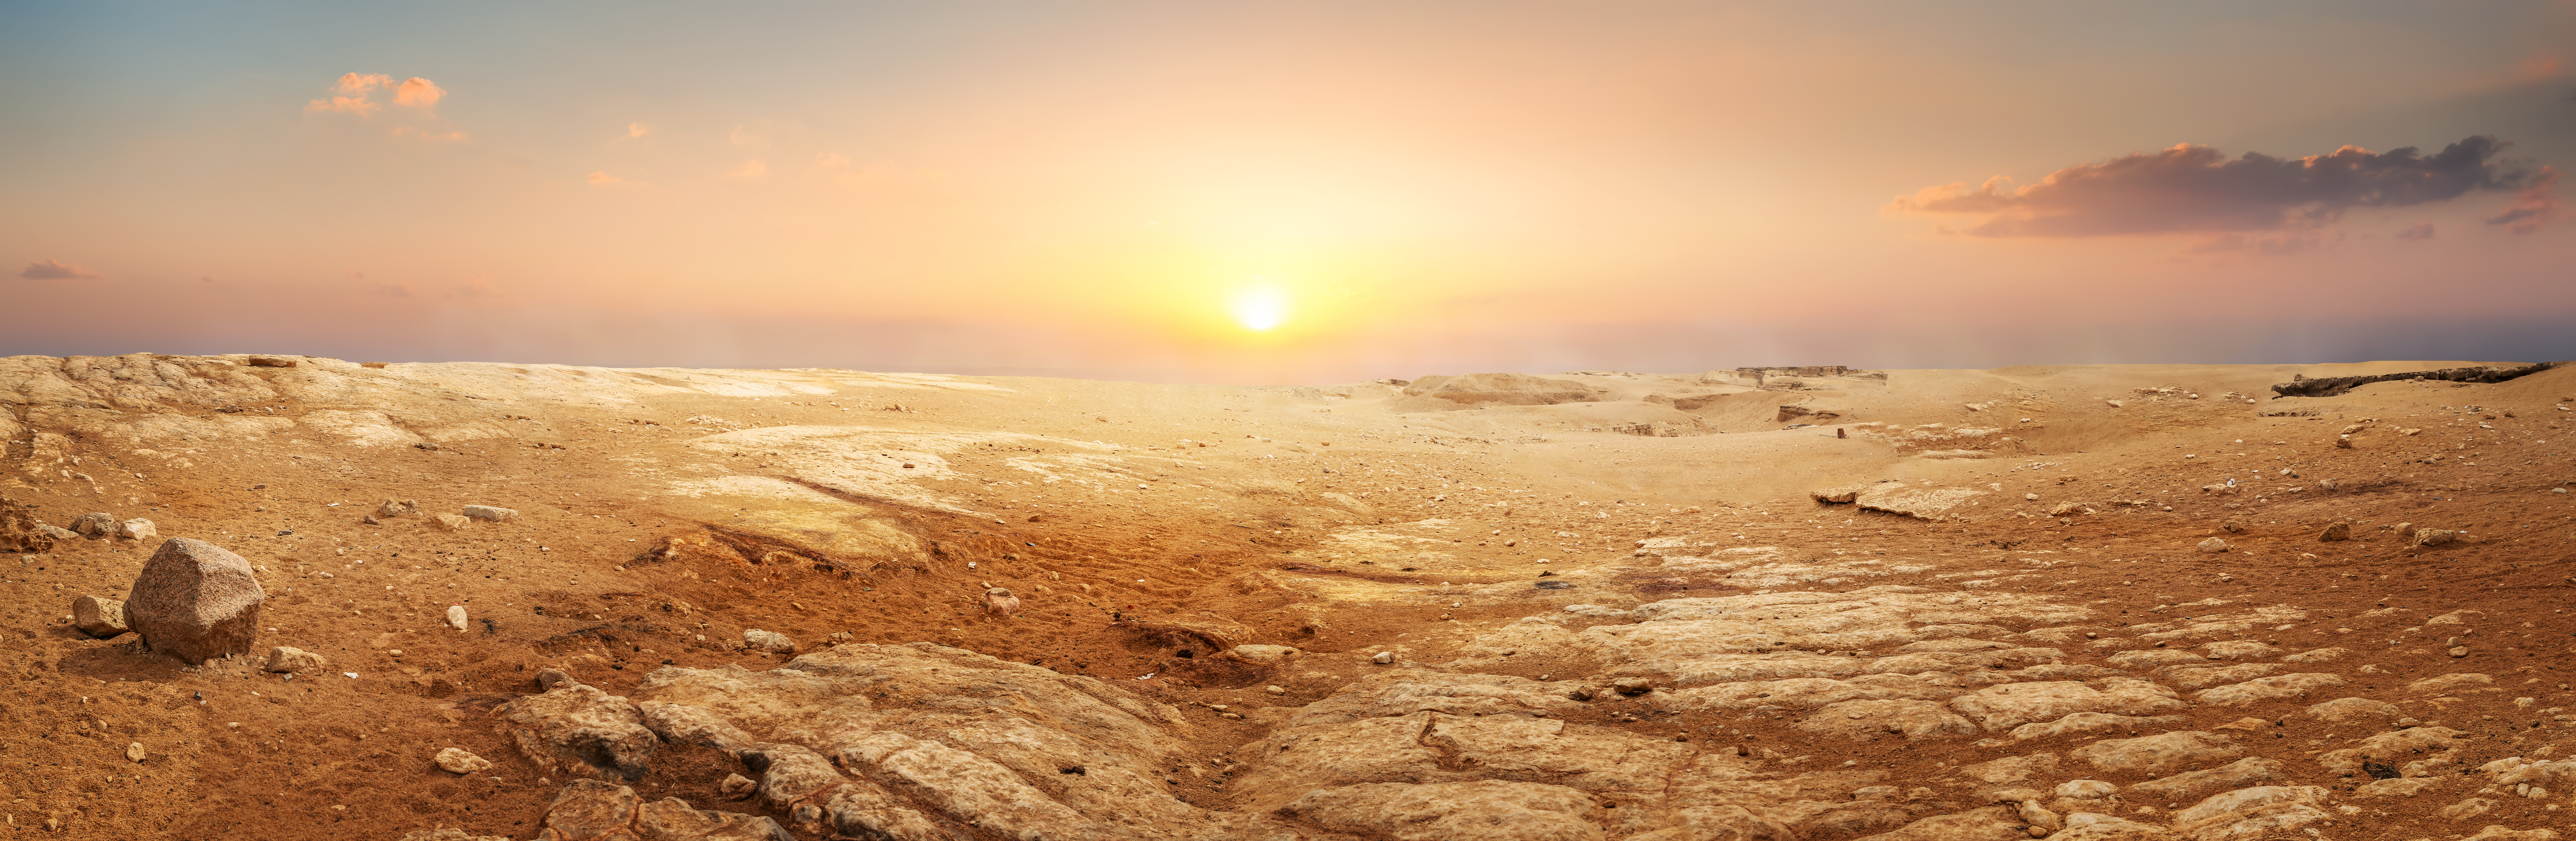 Sandy desert in Egypt at the sunset